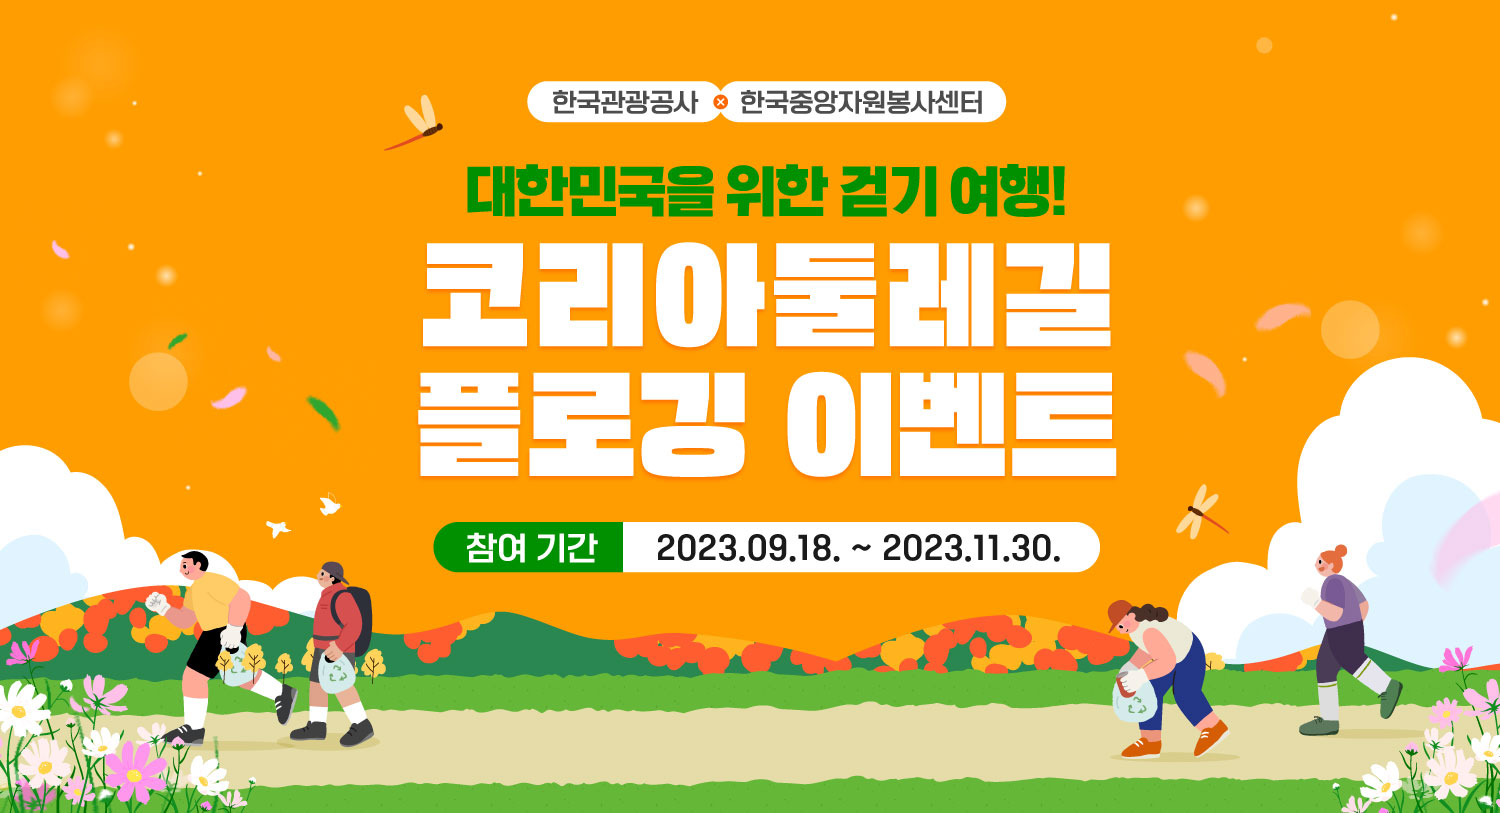 (새창) (새창) 대한민국을 위한 걷기 여행! 코리아둘레길 플로깅 이벤트. 참여기간: 2023.09.18. ~ 2023.11.30. (한국관광공사, 한국중앙자원봉사센터)